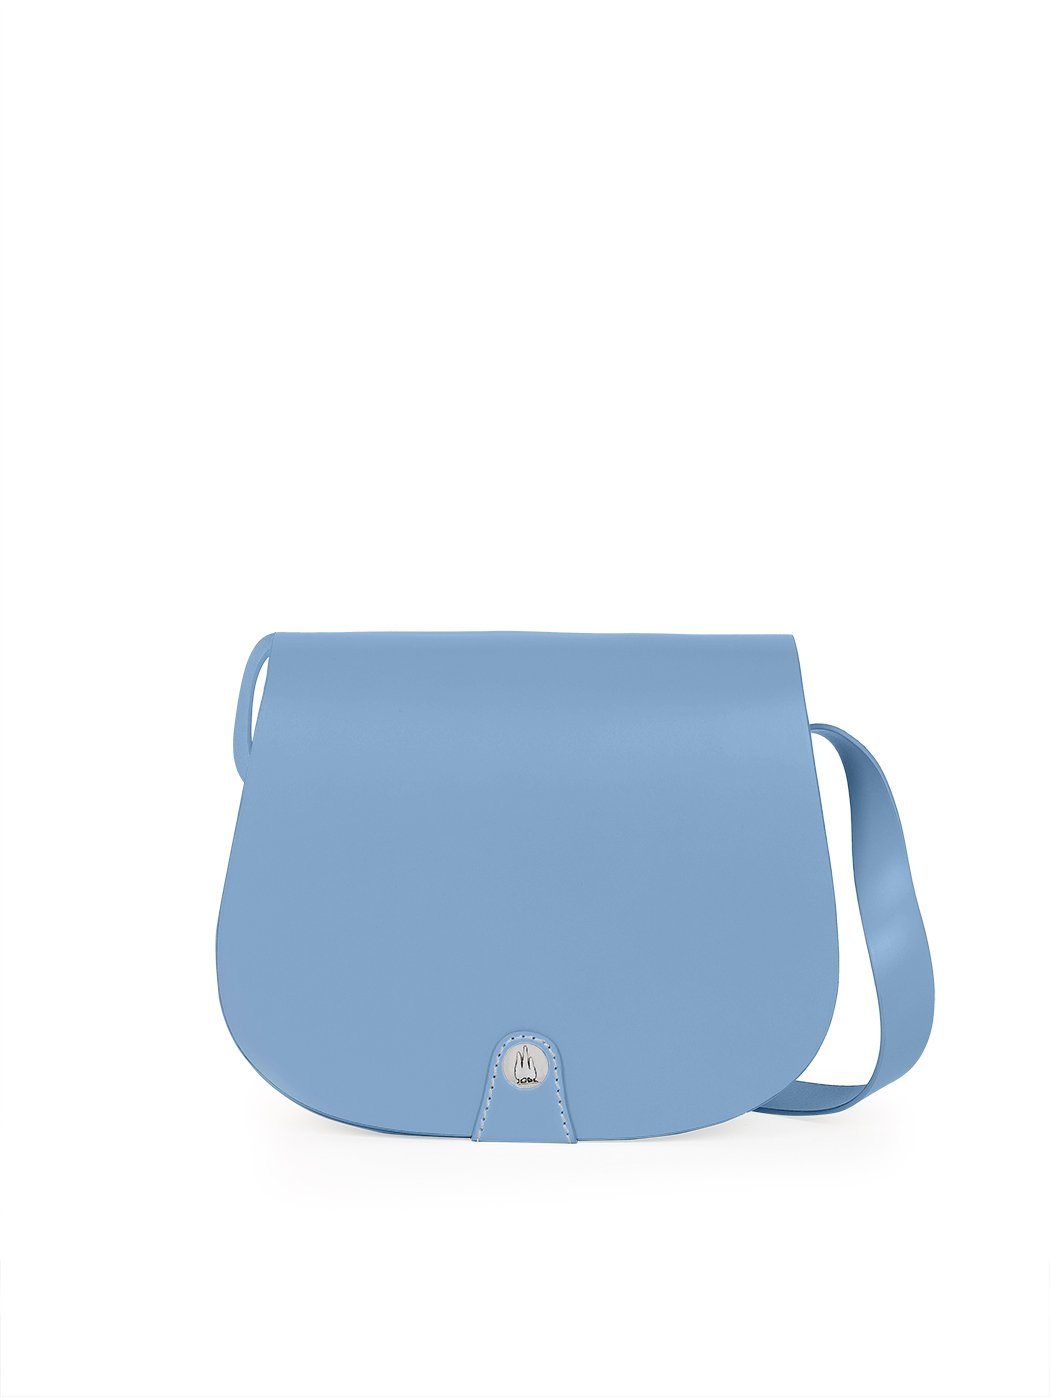 Wholesale 2023 New Kelly Bag One-Shoulder Messenger Handbag